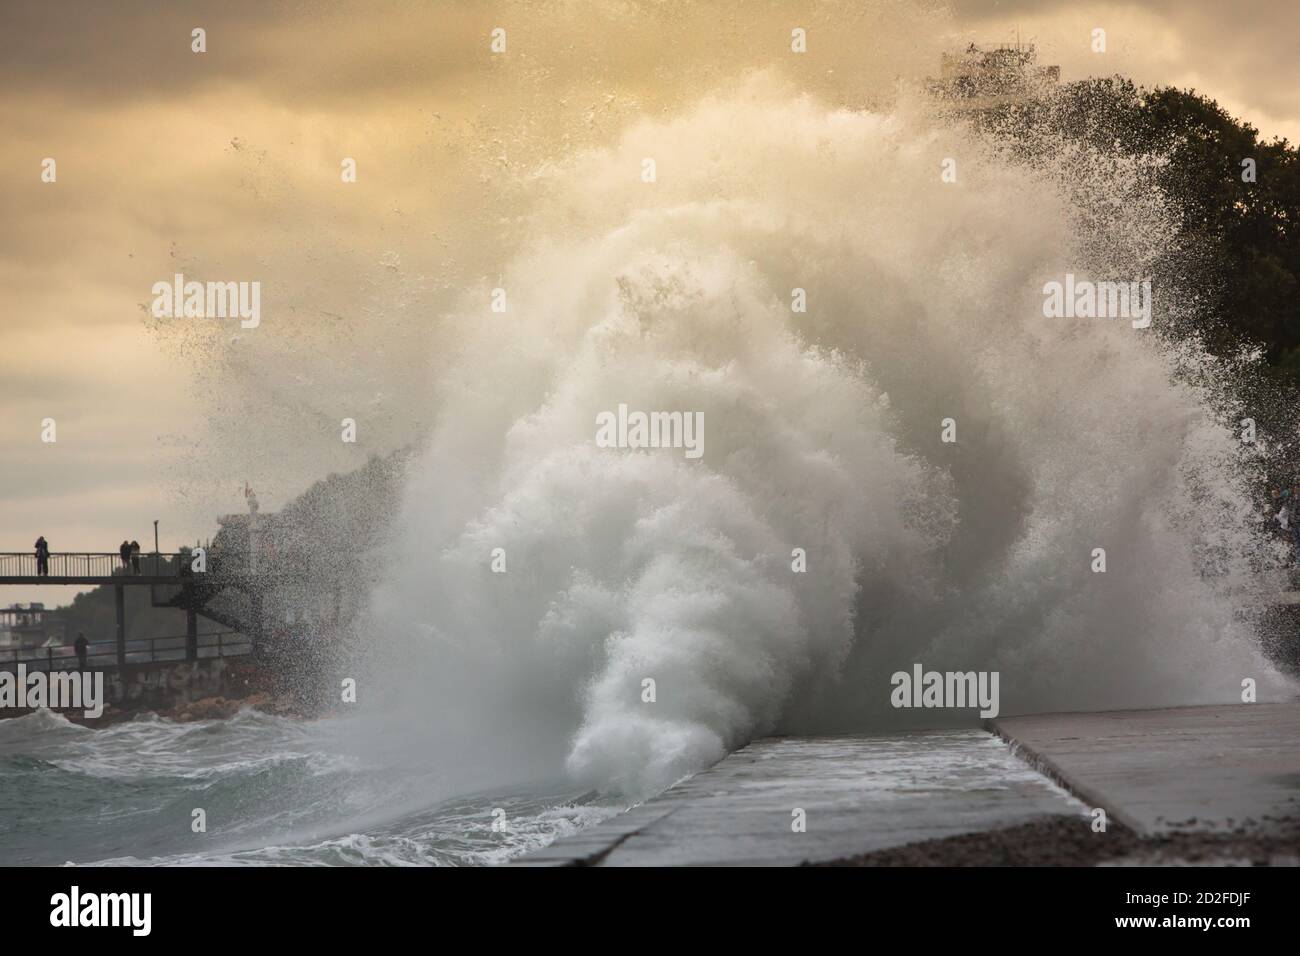 Riesige stürmische Wellen, die in der Nähe des Stadtdamms krachen. Große Wellen spritzen. Riesige Wellen an einem stürmischen Tag in Jalta. Kraft der Natur, Sturm Stockfoto